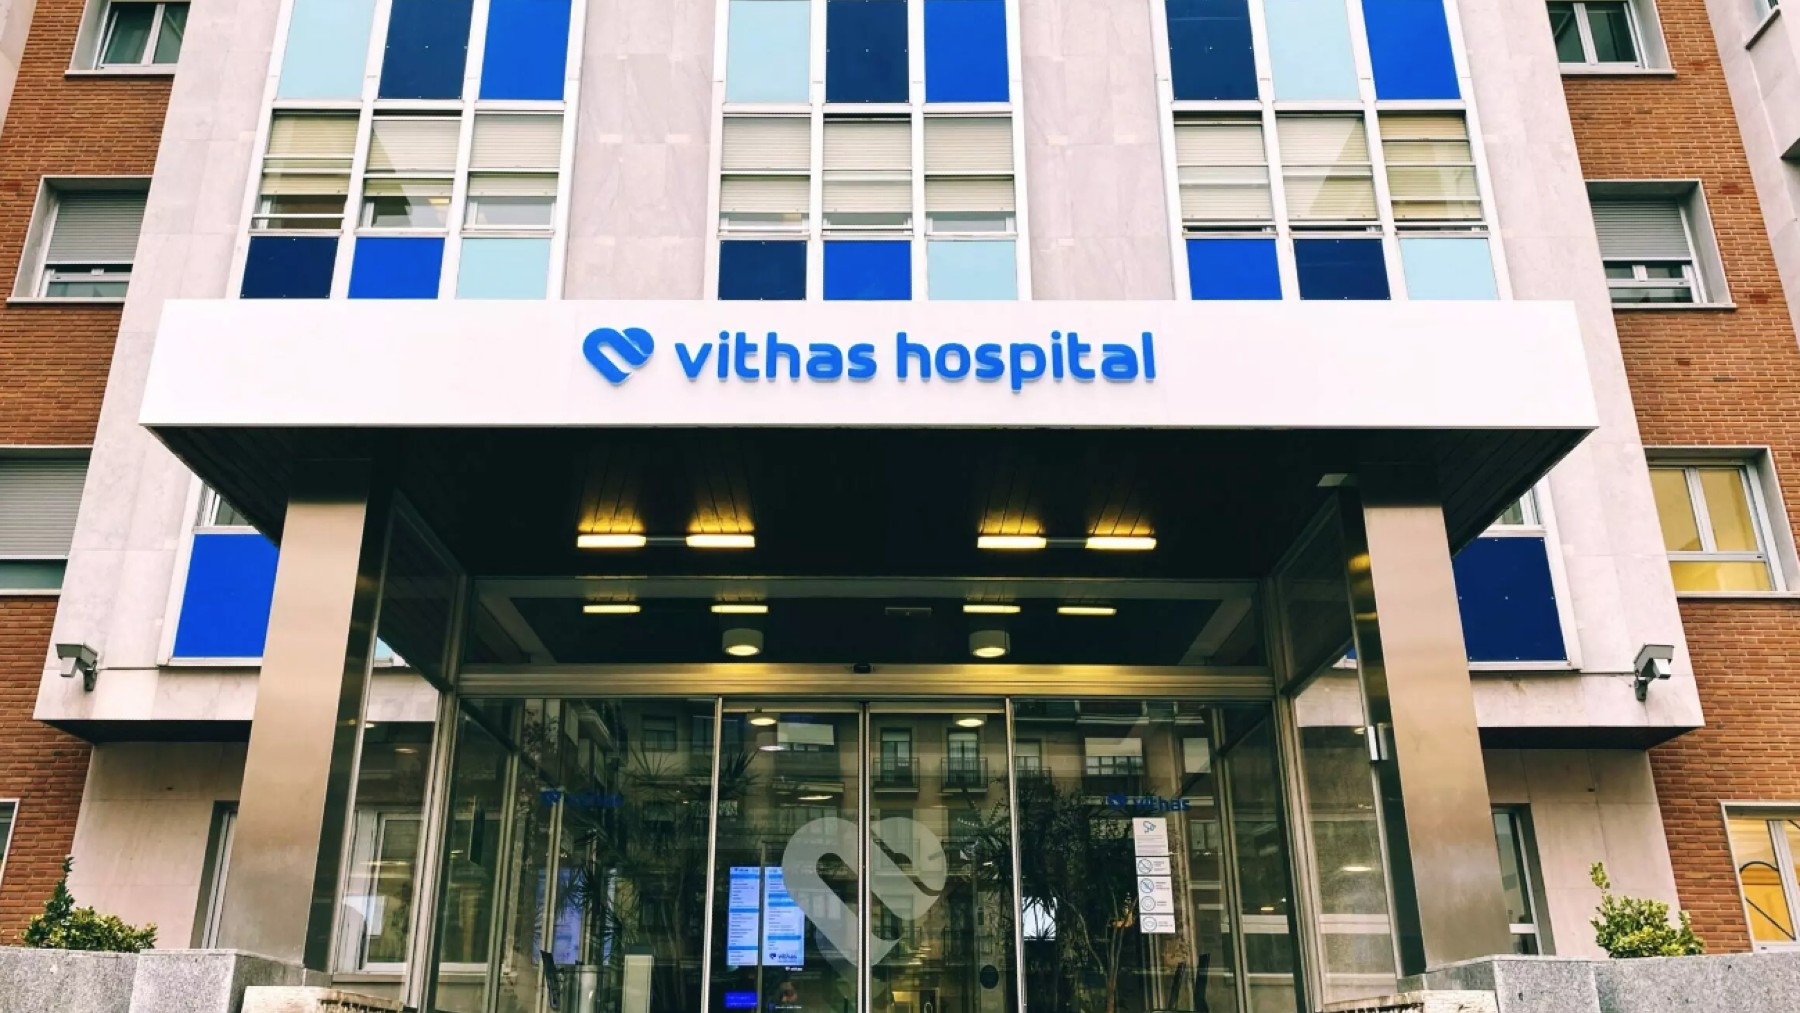 Uno de los hospitales de Vithas en Vitoria. @Vithas